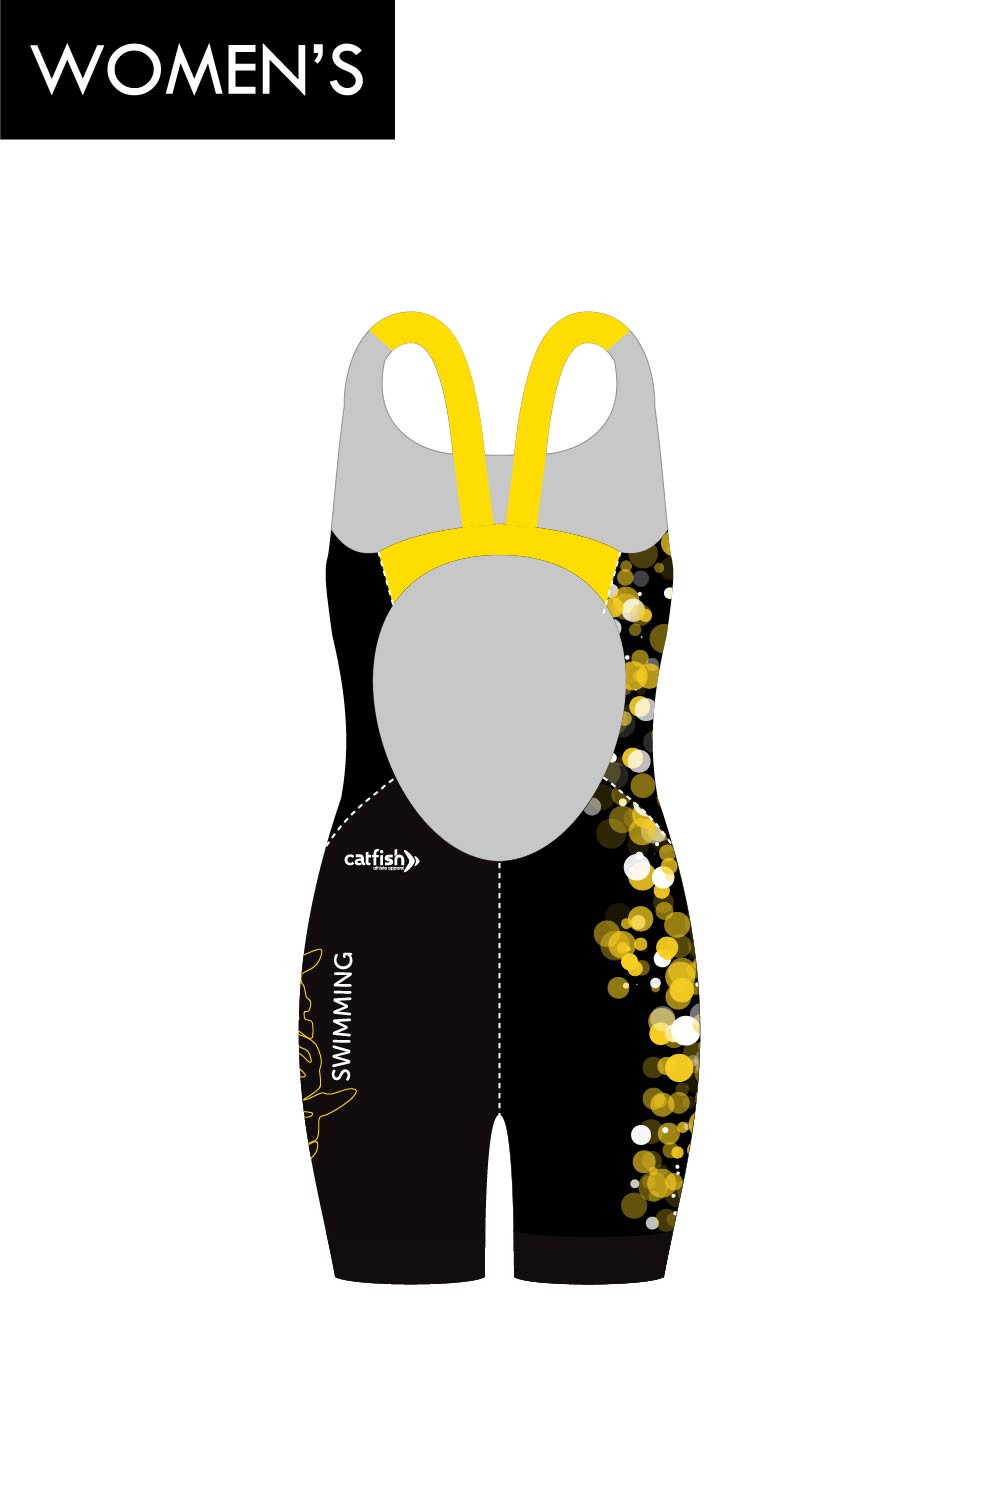 Nundah Sharks Women's Open Back Race Suit